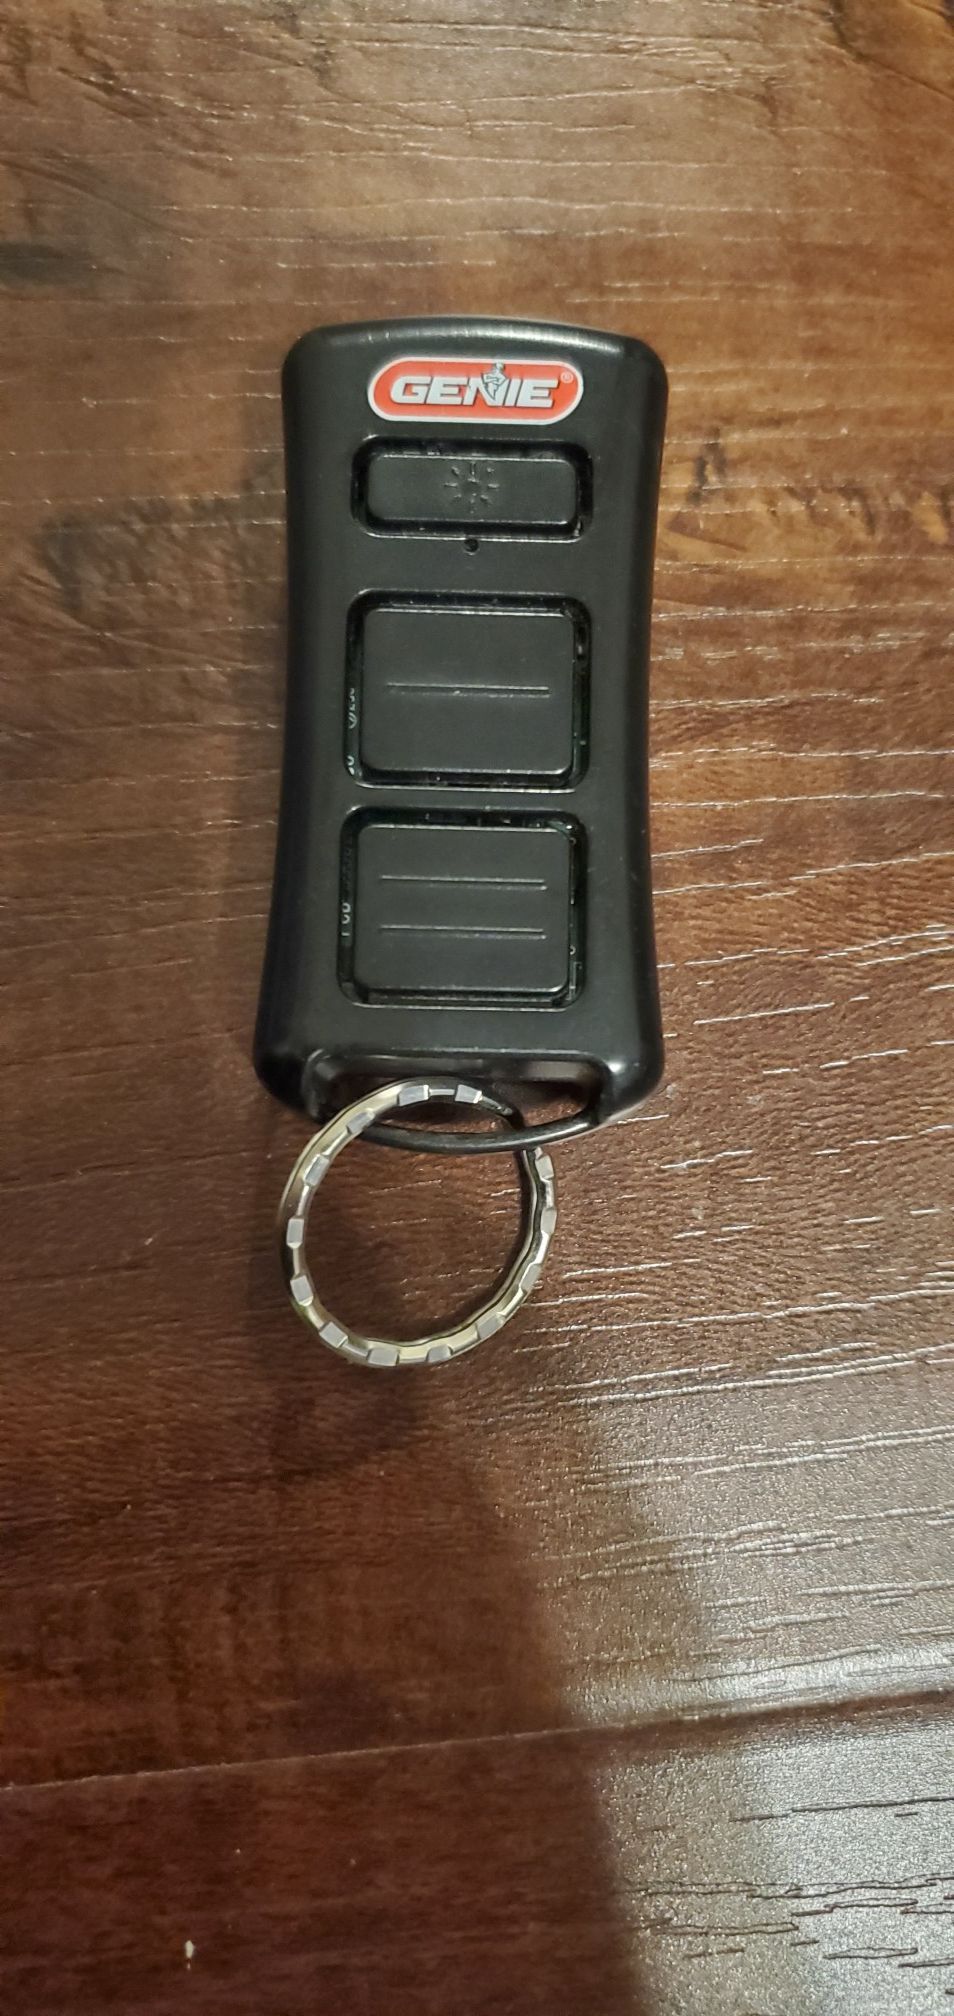 Genie Garage Door Opener Keychain with light